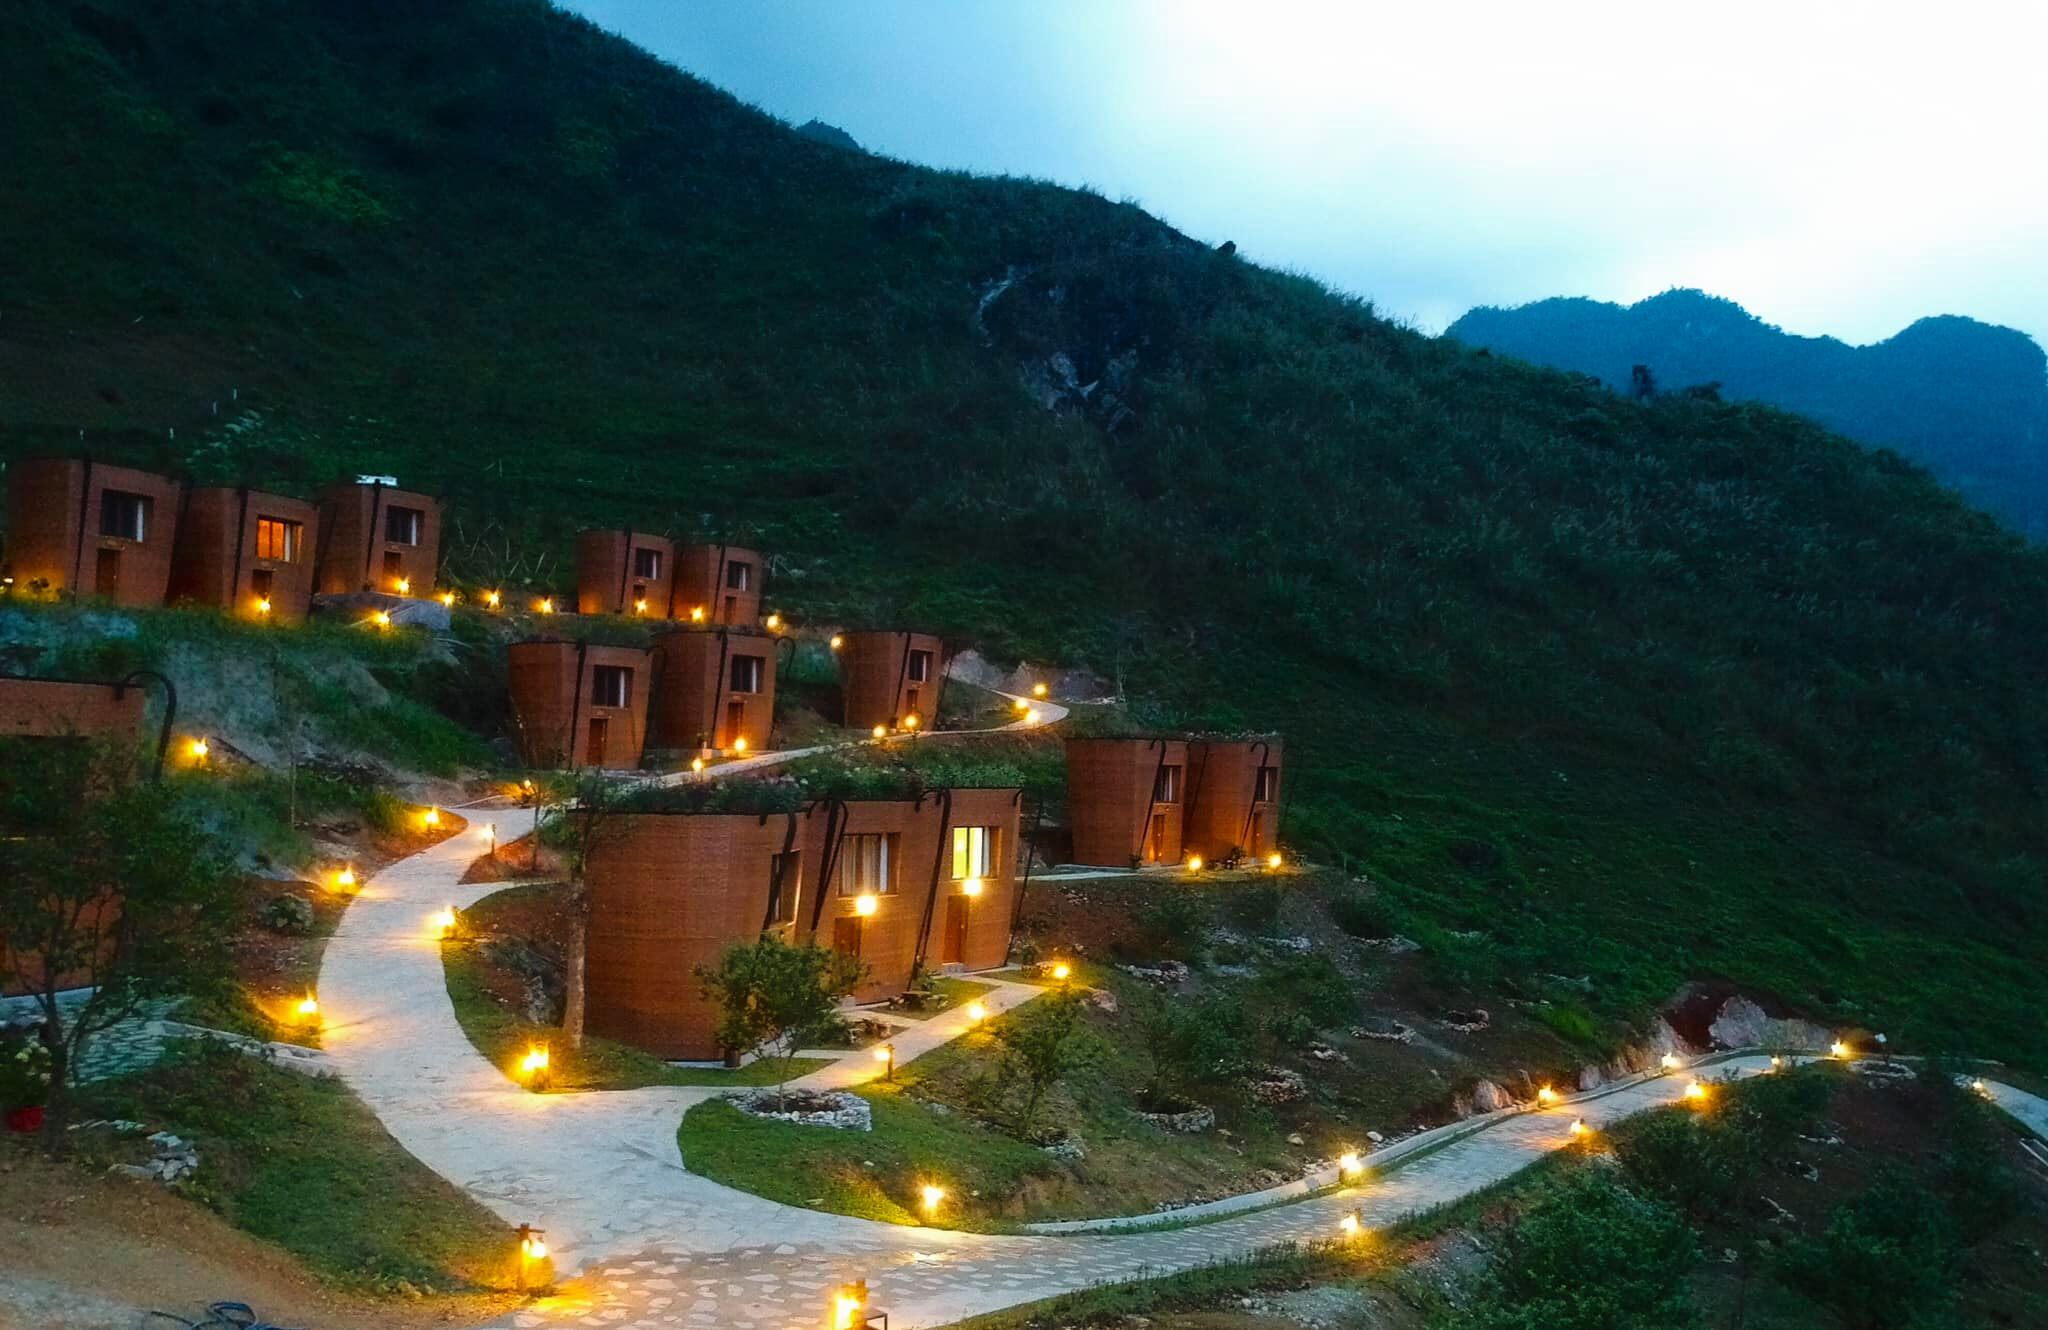 Mới lạ khu nghỉ dưỡng hình quẩy tấu đẹp tựa “trời Tây” ở Hà Giang - 7